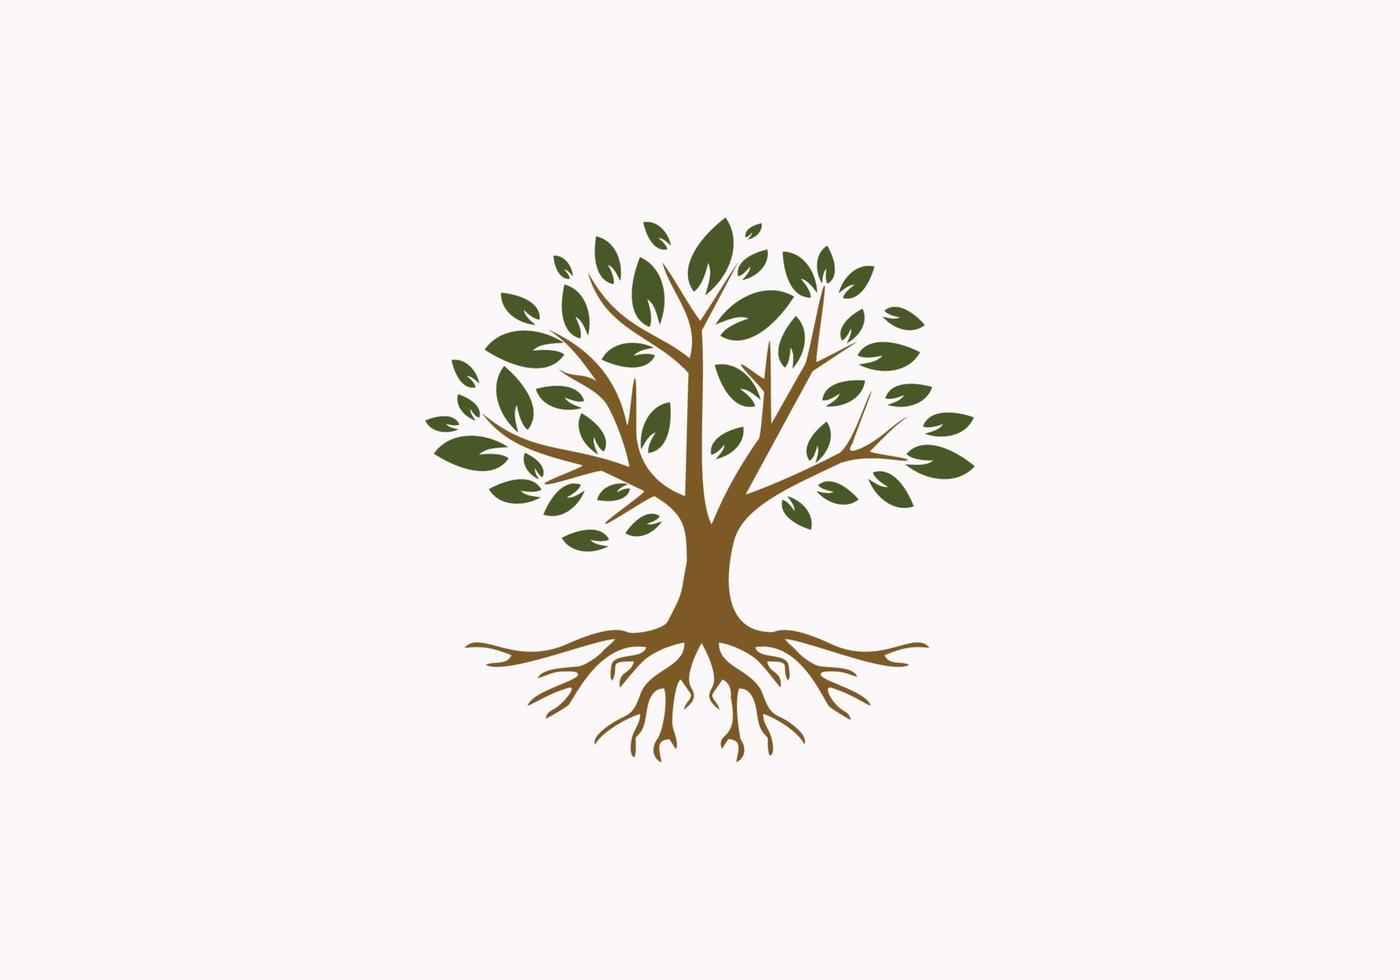 golden Tree of Life Stamp Seal Emblem Oak Banyan Maple logo design vector